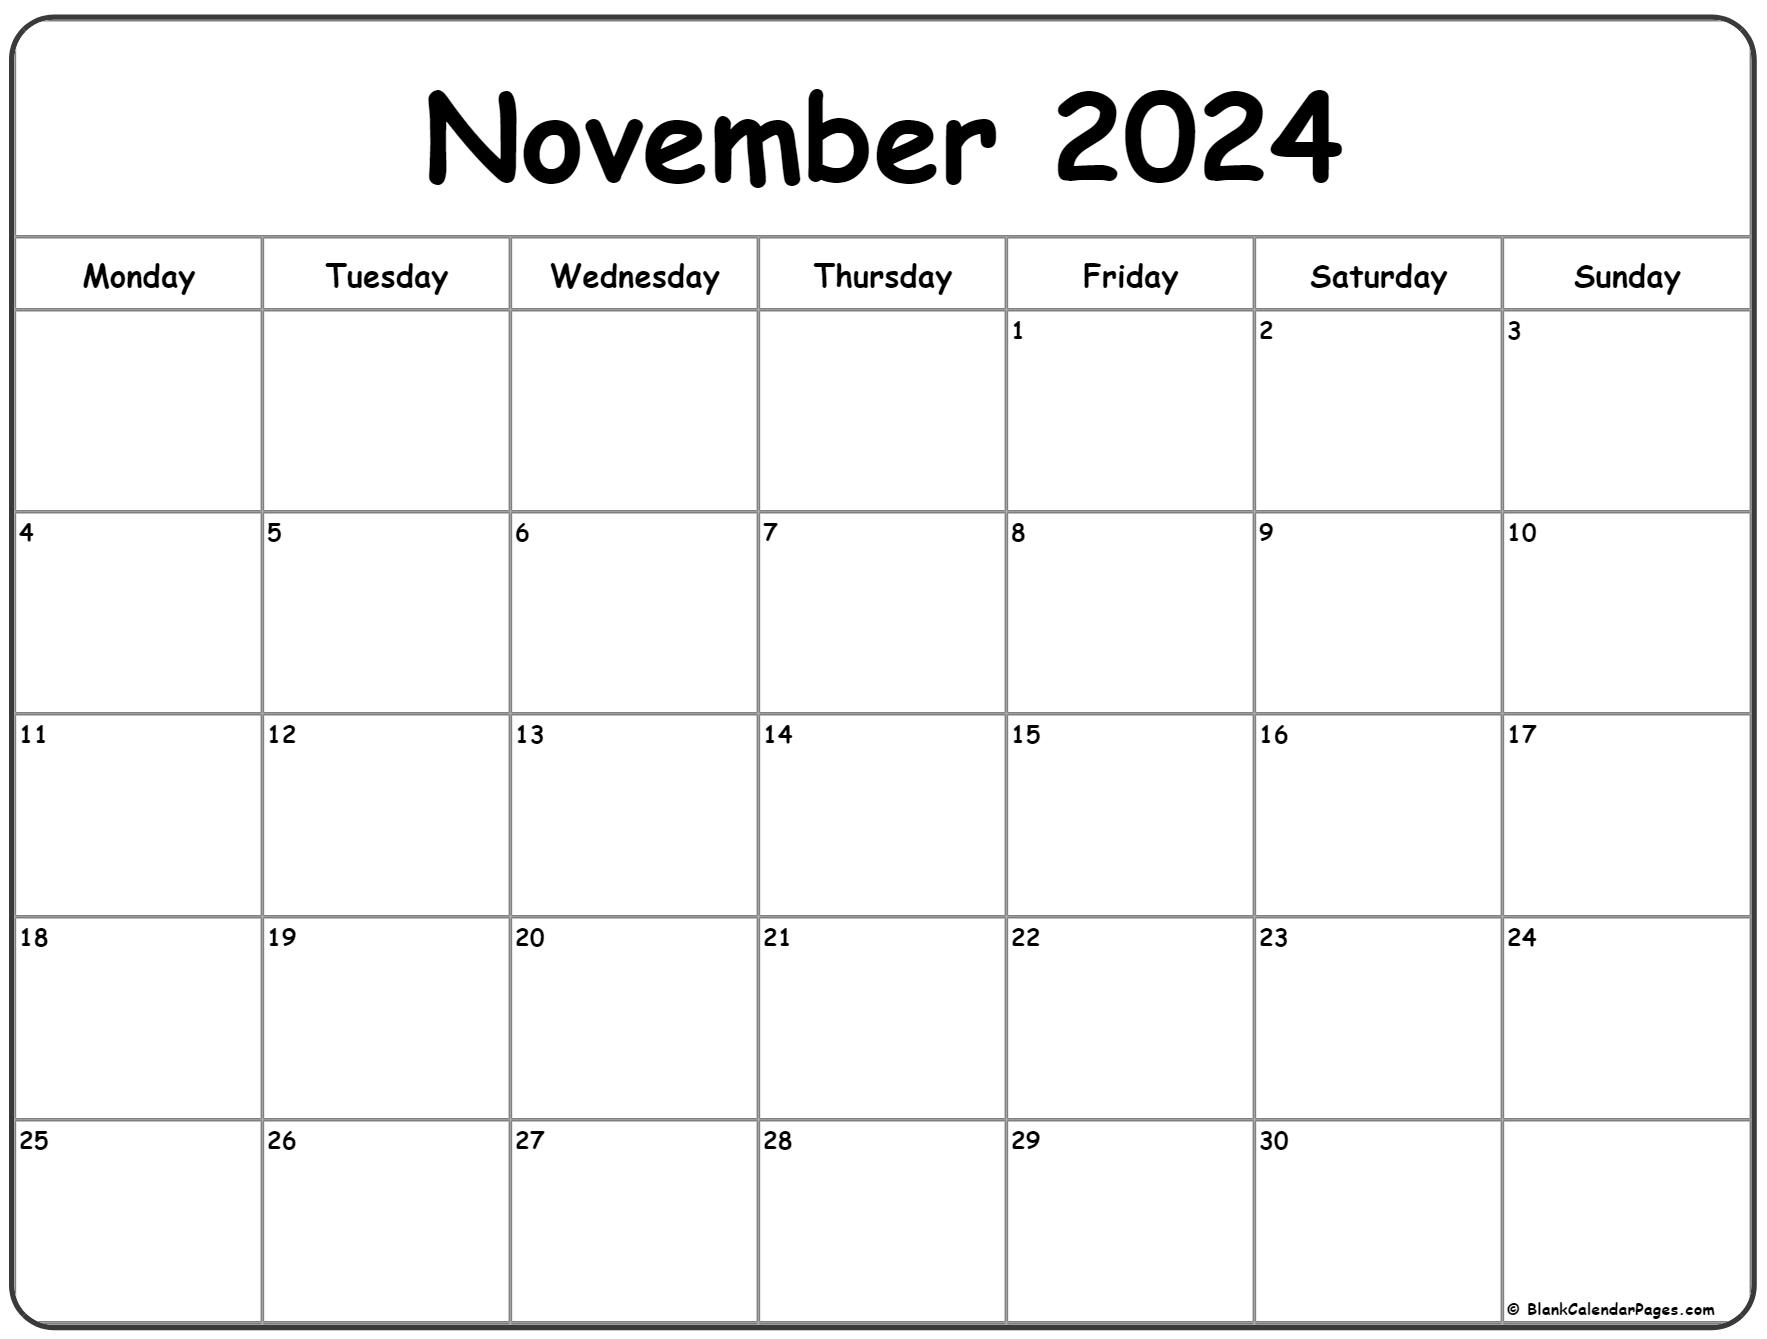 November 2024 Monday Calendar | Monday To Sunday for Calendar November 2024 Printable